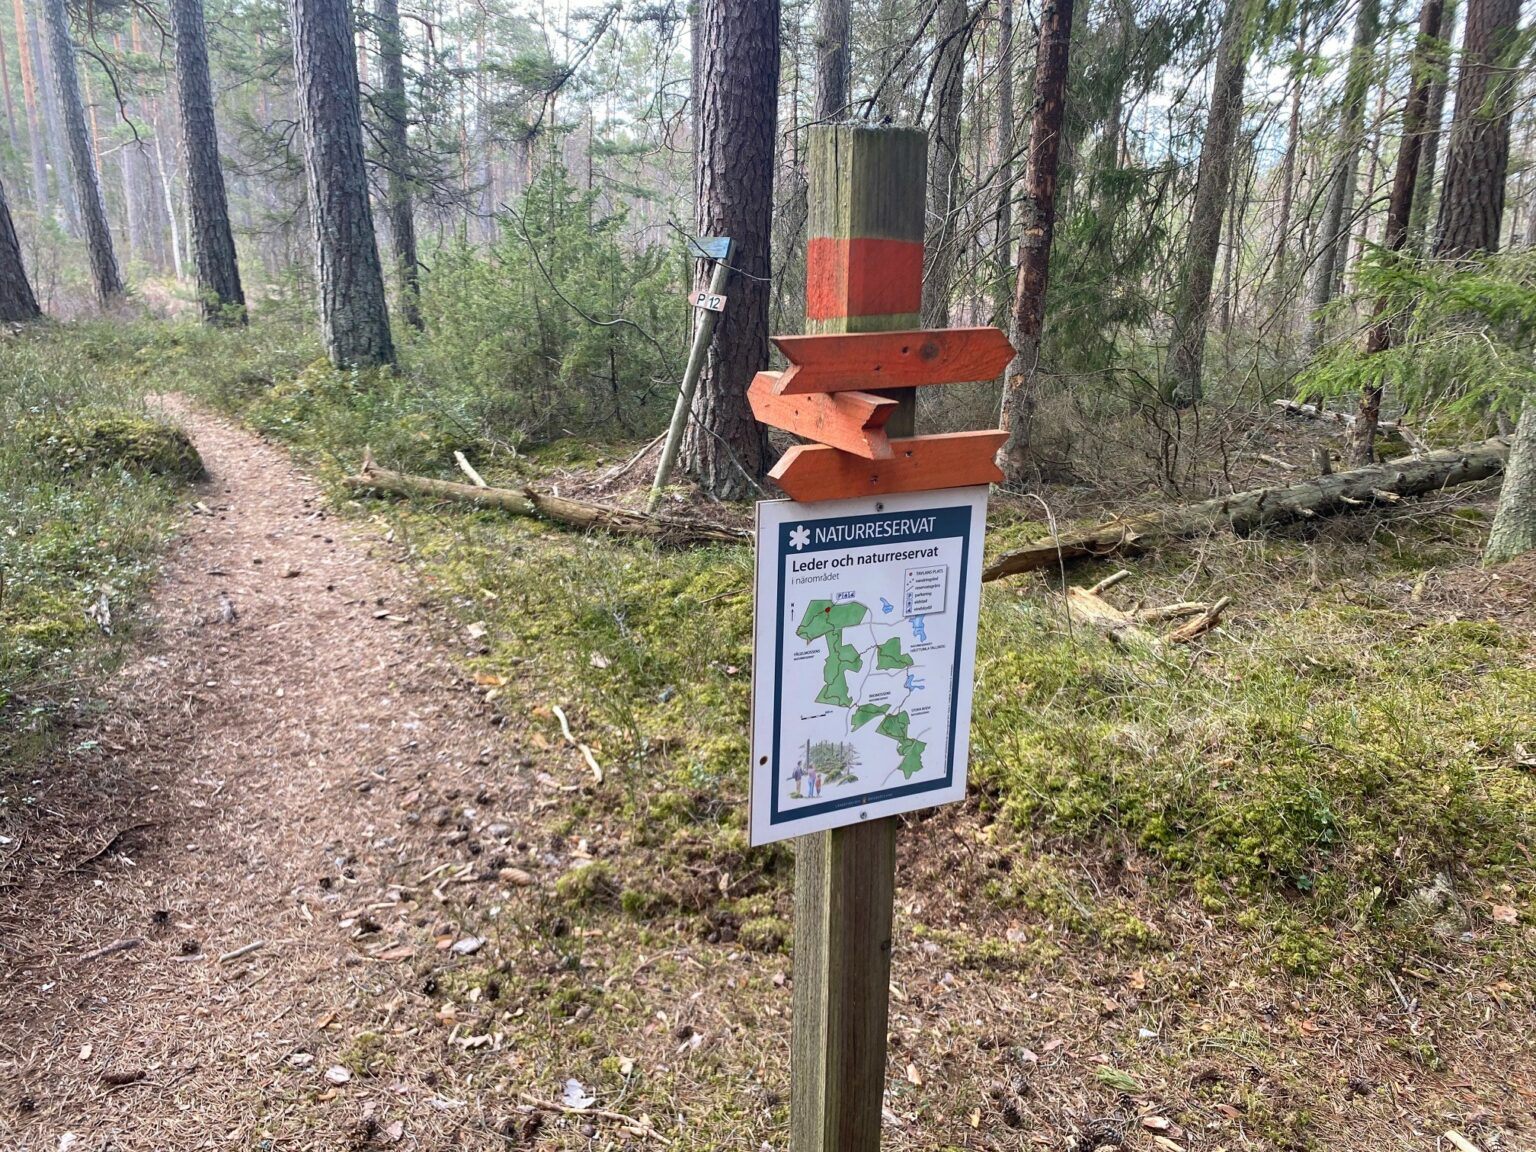 En skylt med olika orangea pilar påvisar olika stigar i ett naturreservat.